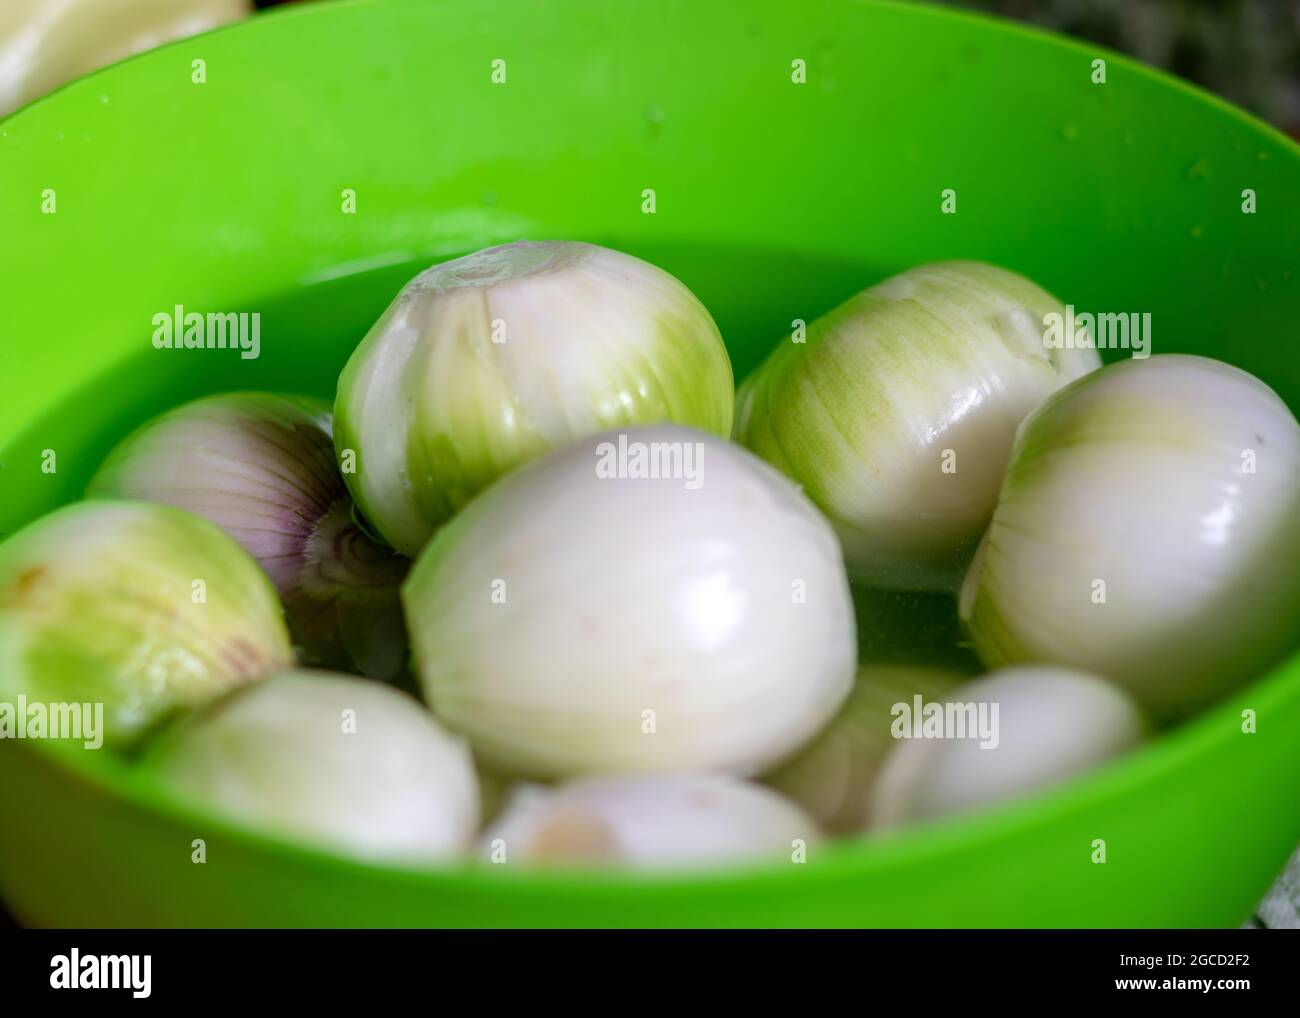 photo en couleur avec oignons pelés dans un bol vert, oignons préparés pour la conservation à la maison, temps de récolte d'automne Banque D'Images